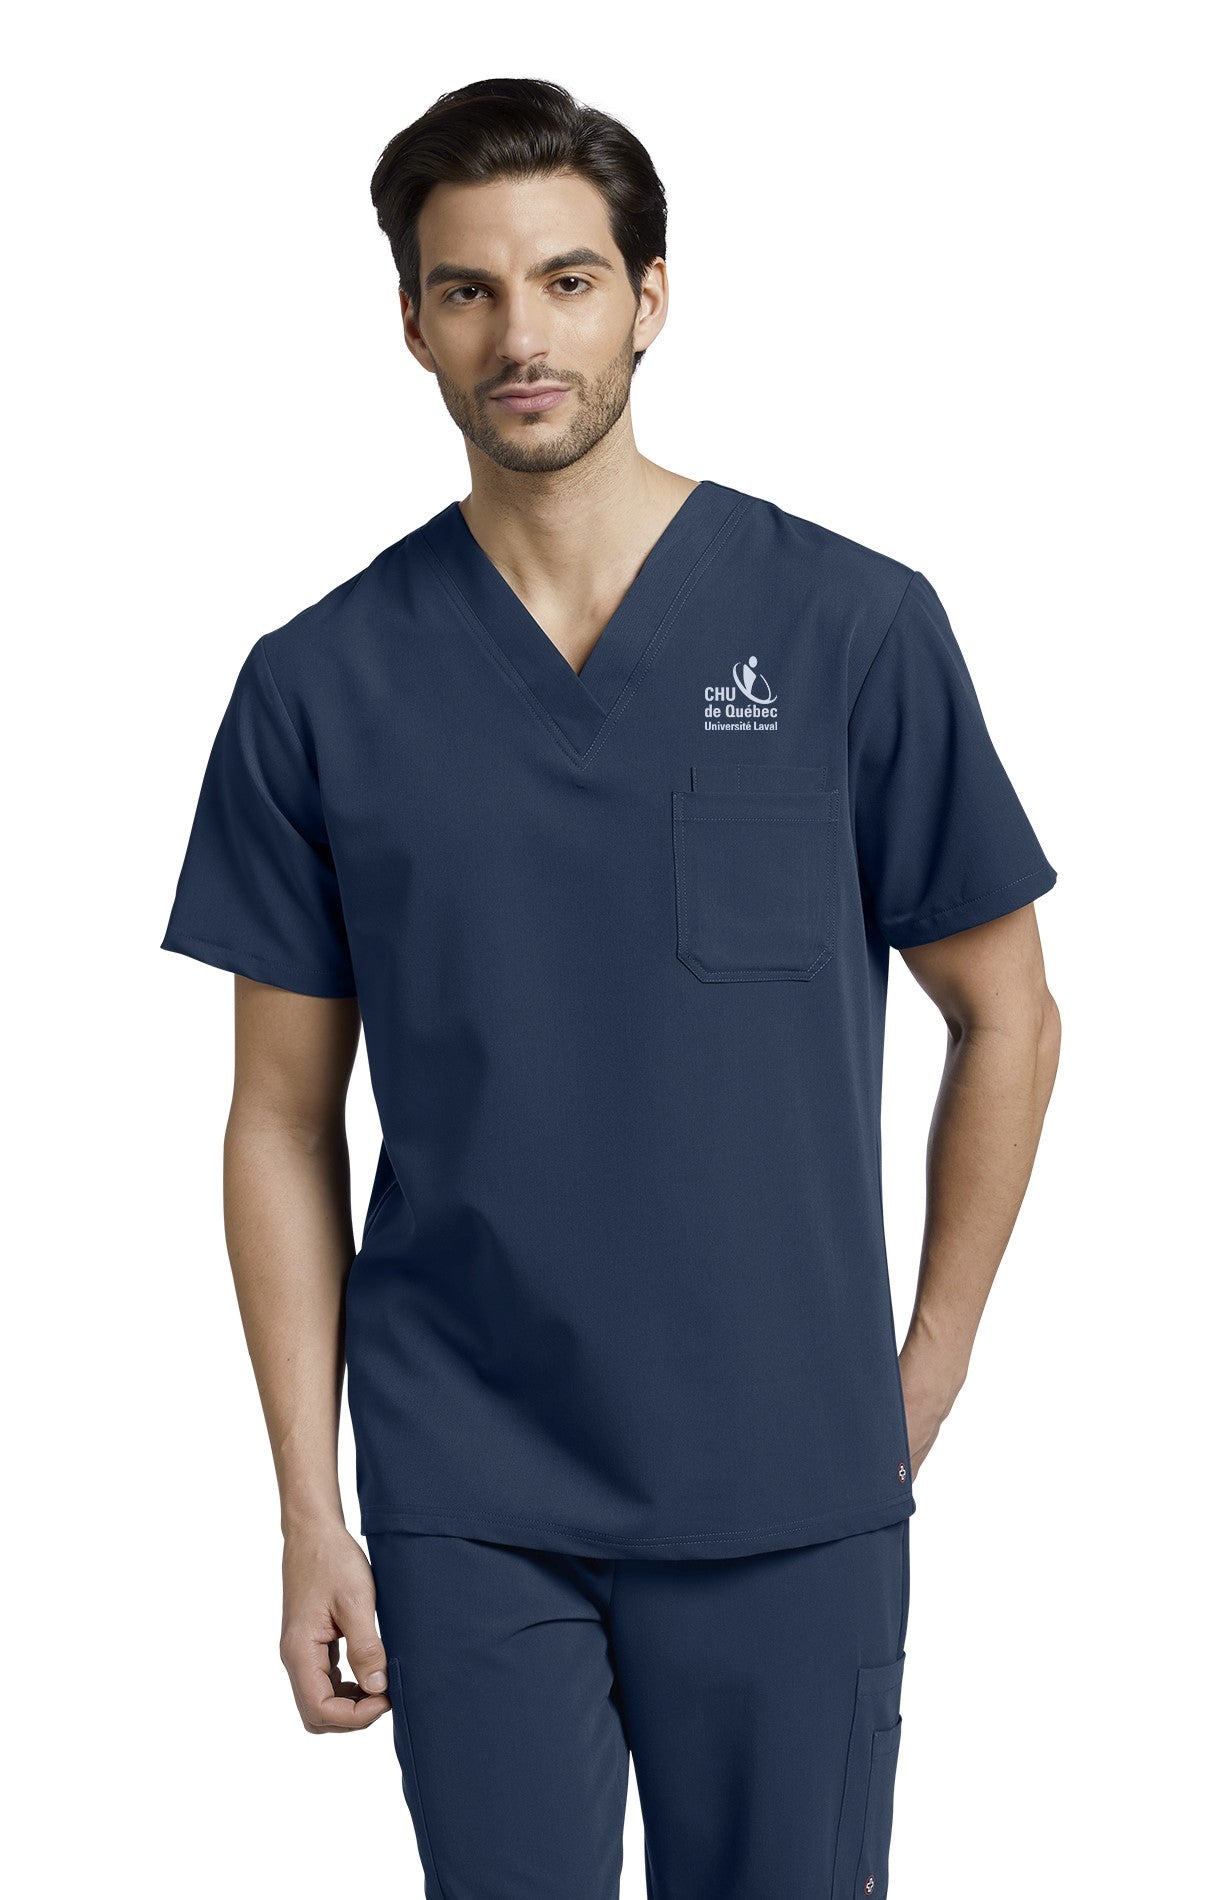 Haut d'uniforme pour infirmiers Uniformes Sélect #2206CHU marine